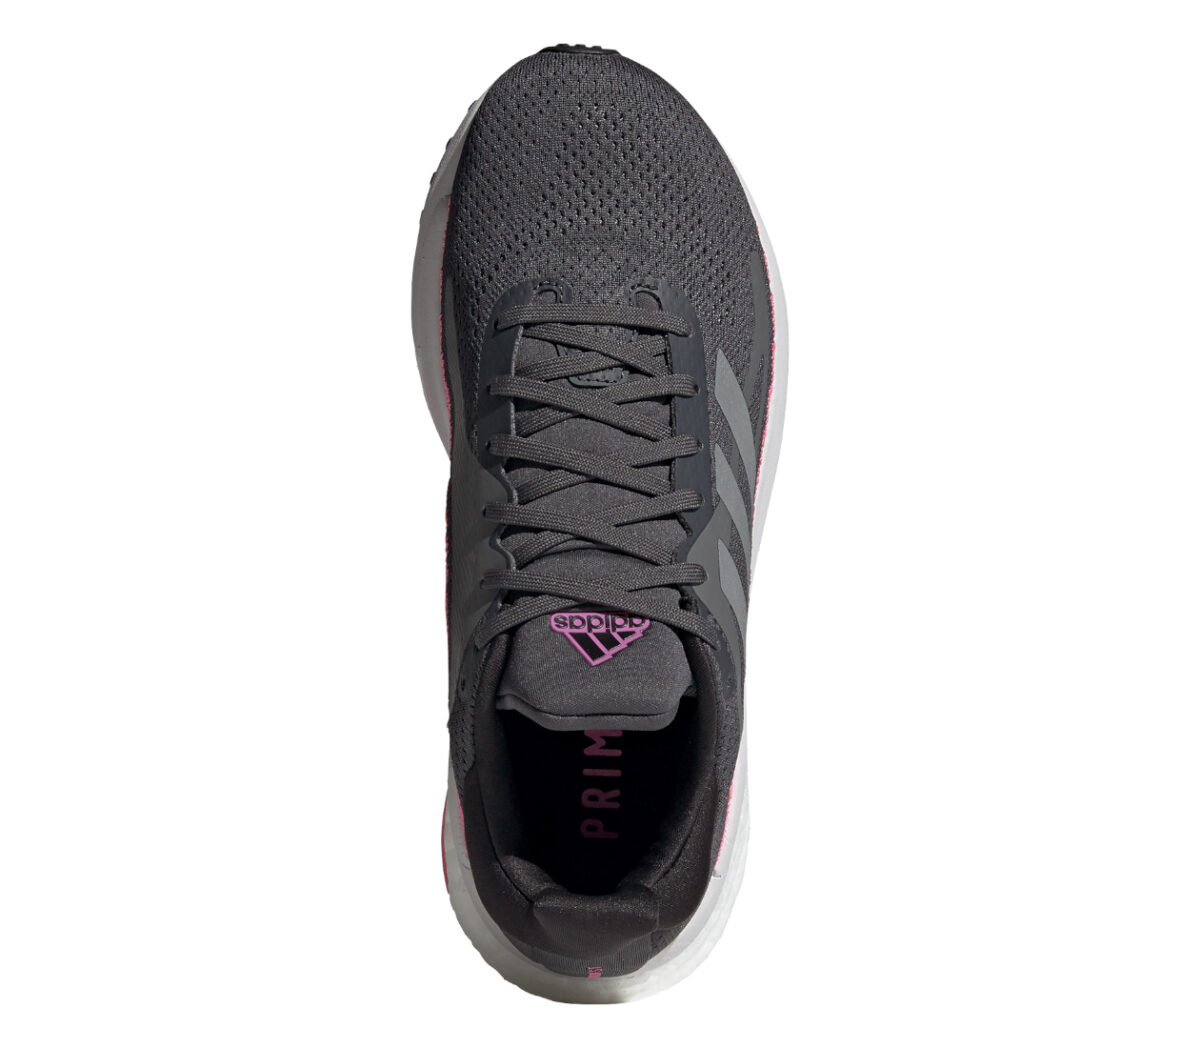 tomaia scarpa da running donna per pronazione adidas solar glide st 3 nera rosa